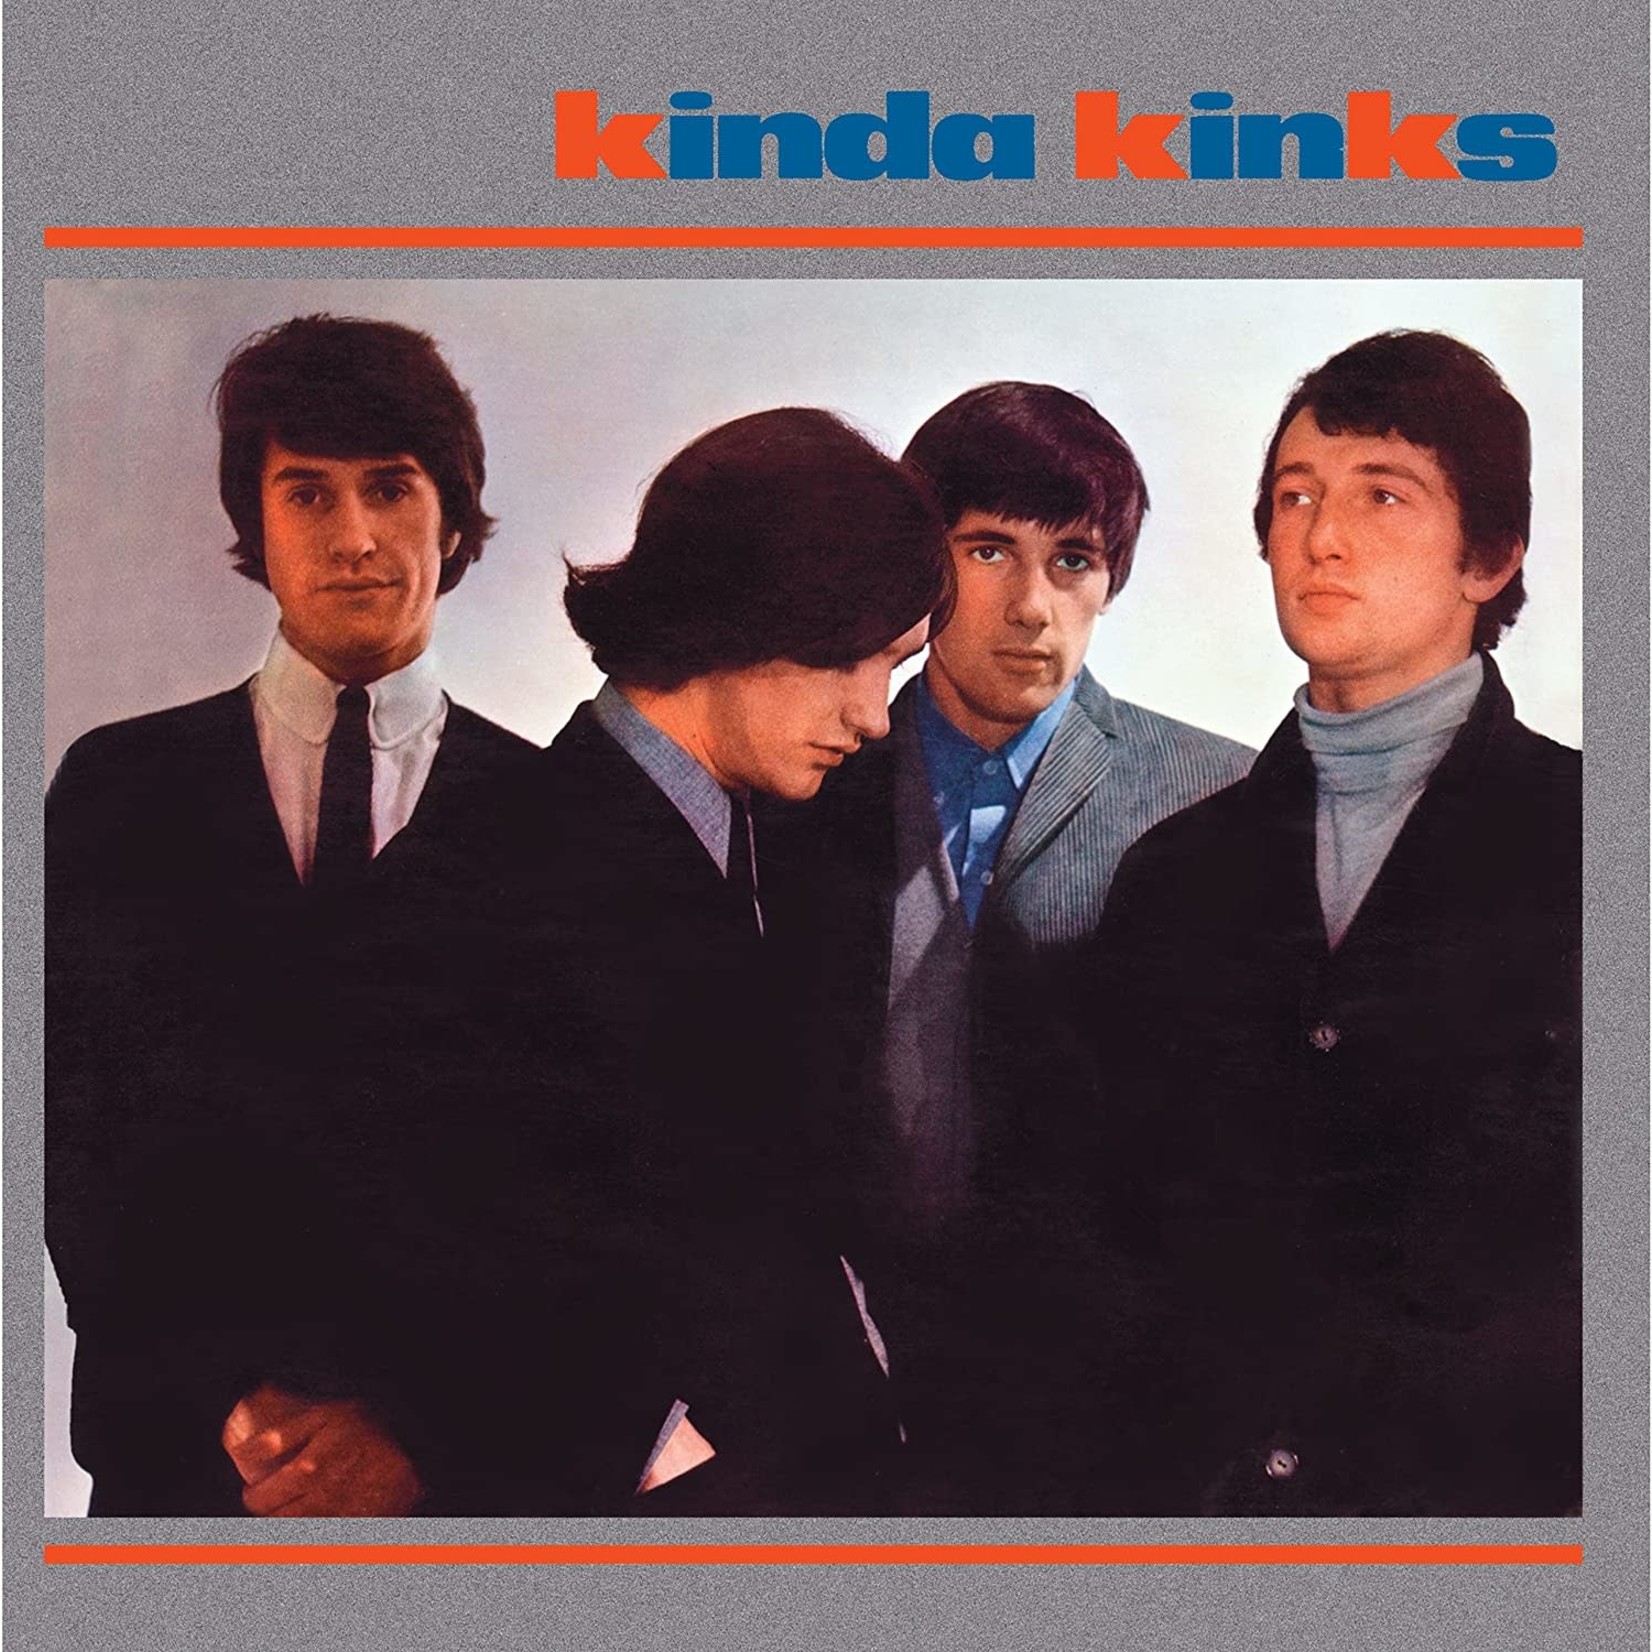 Kinks - Kinda Kinks [LP]